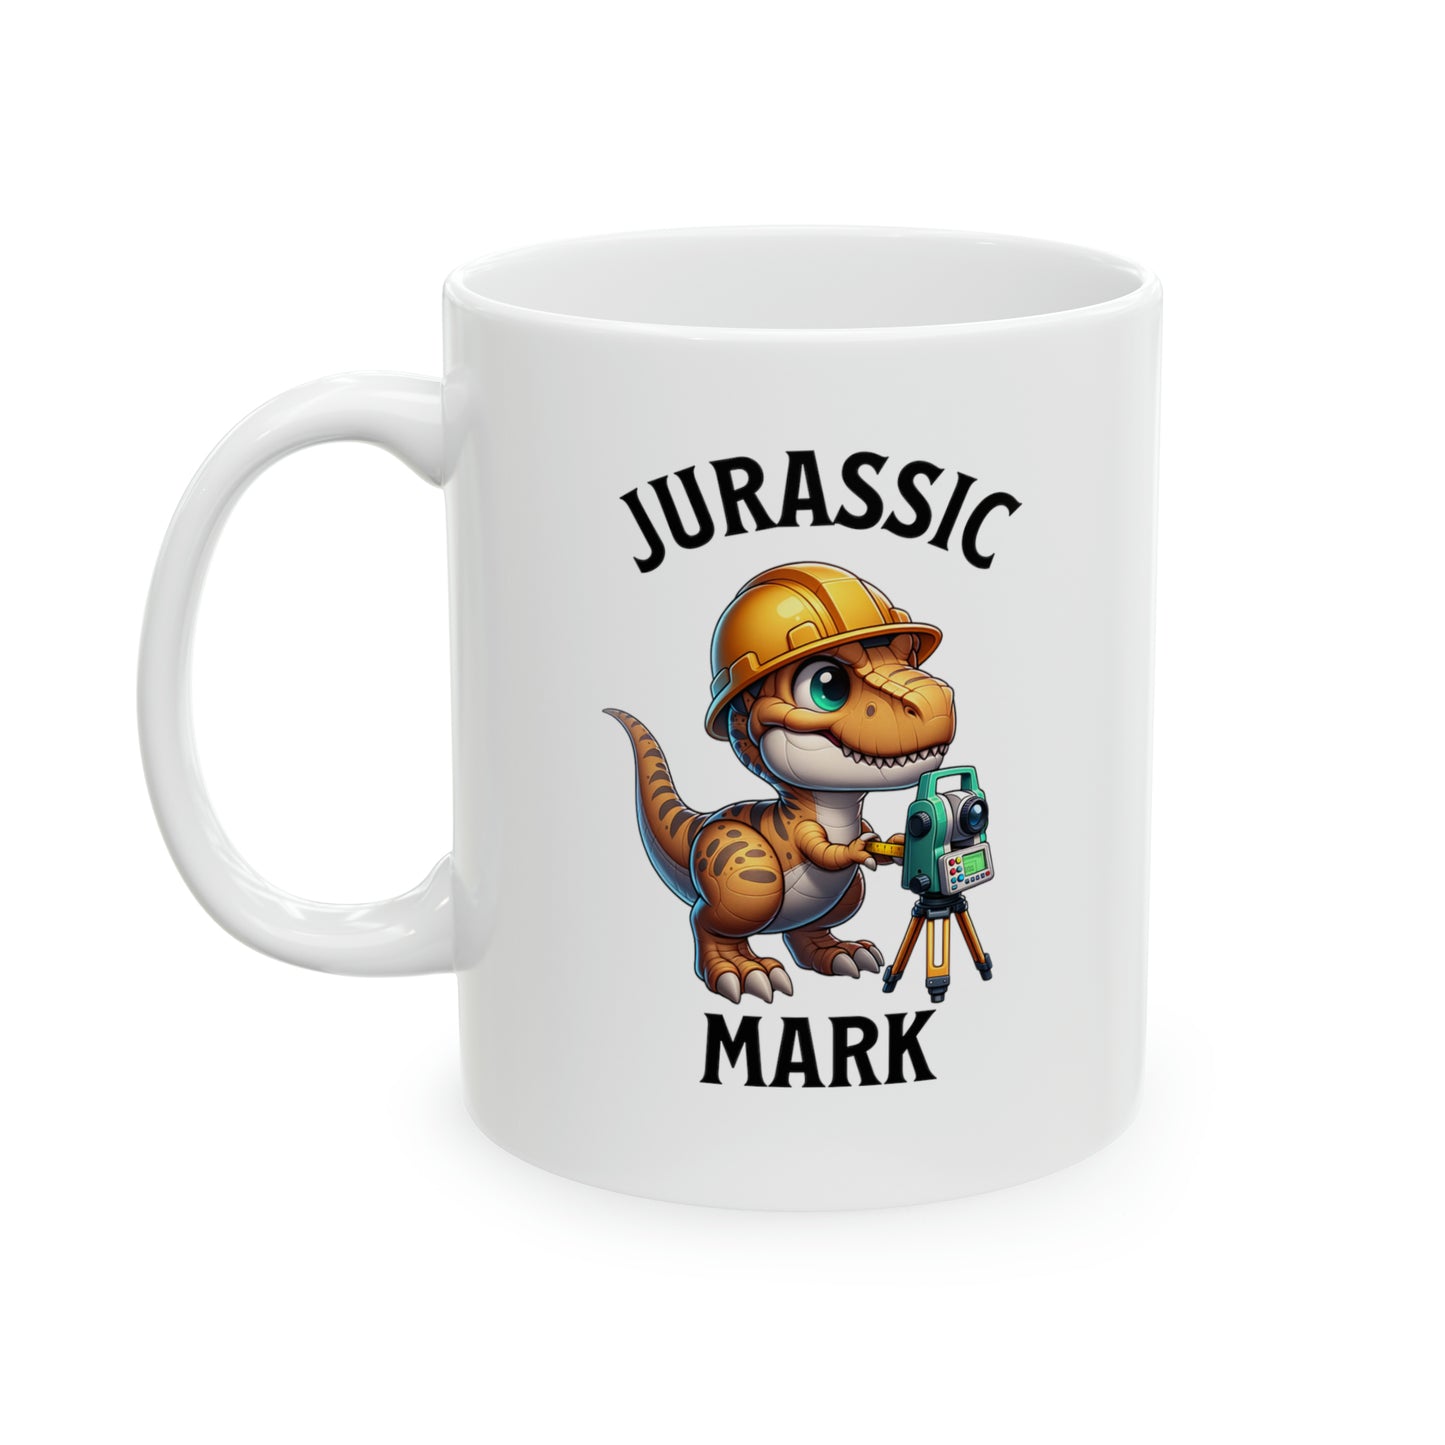 Jurassic Mark Mug 11oz